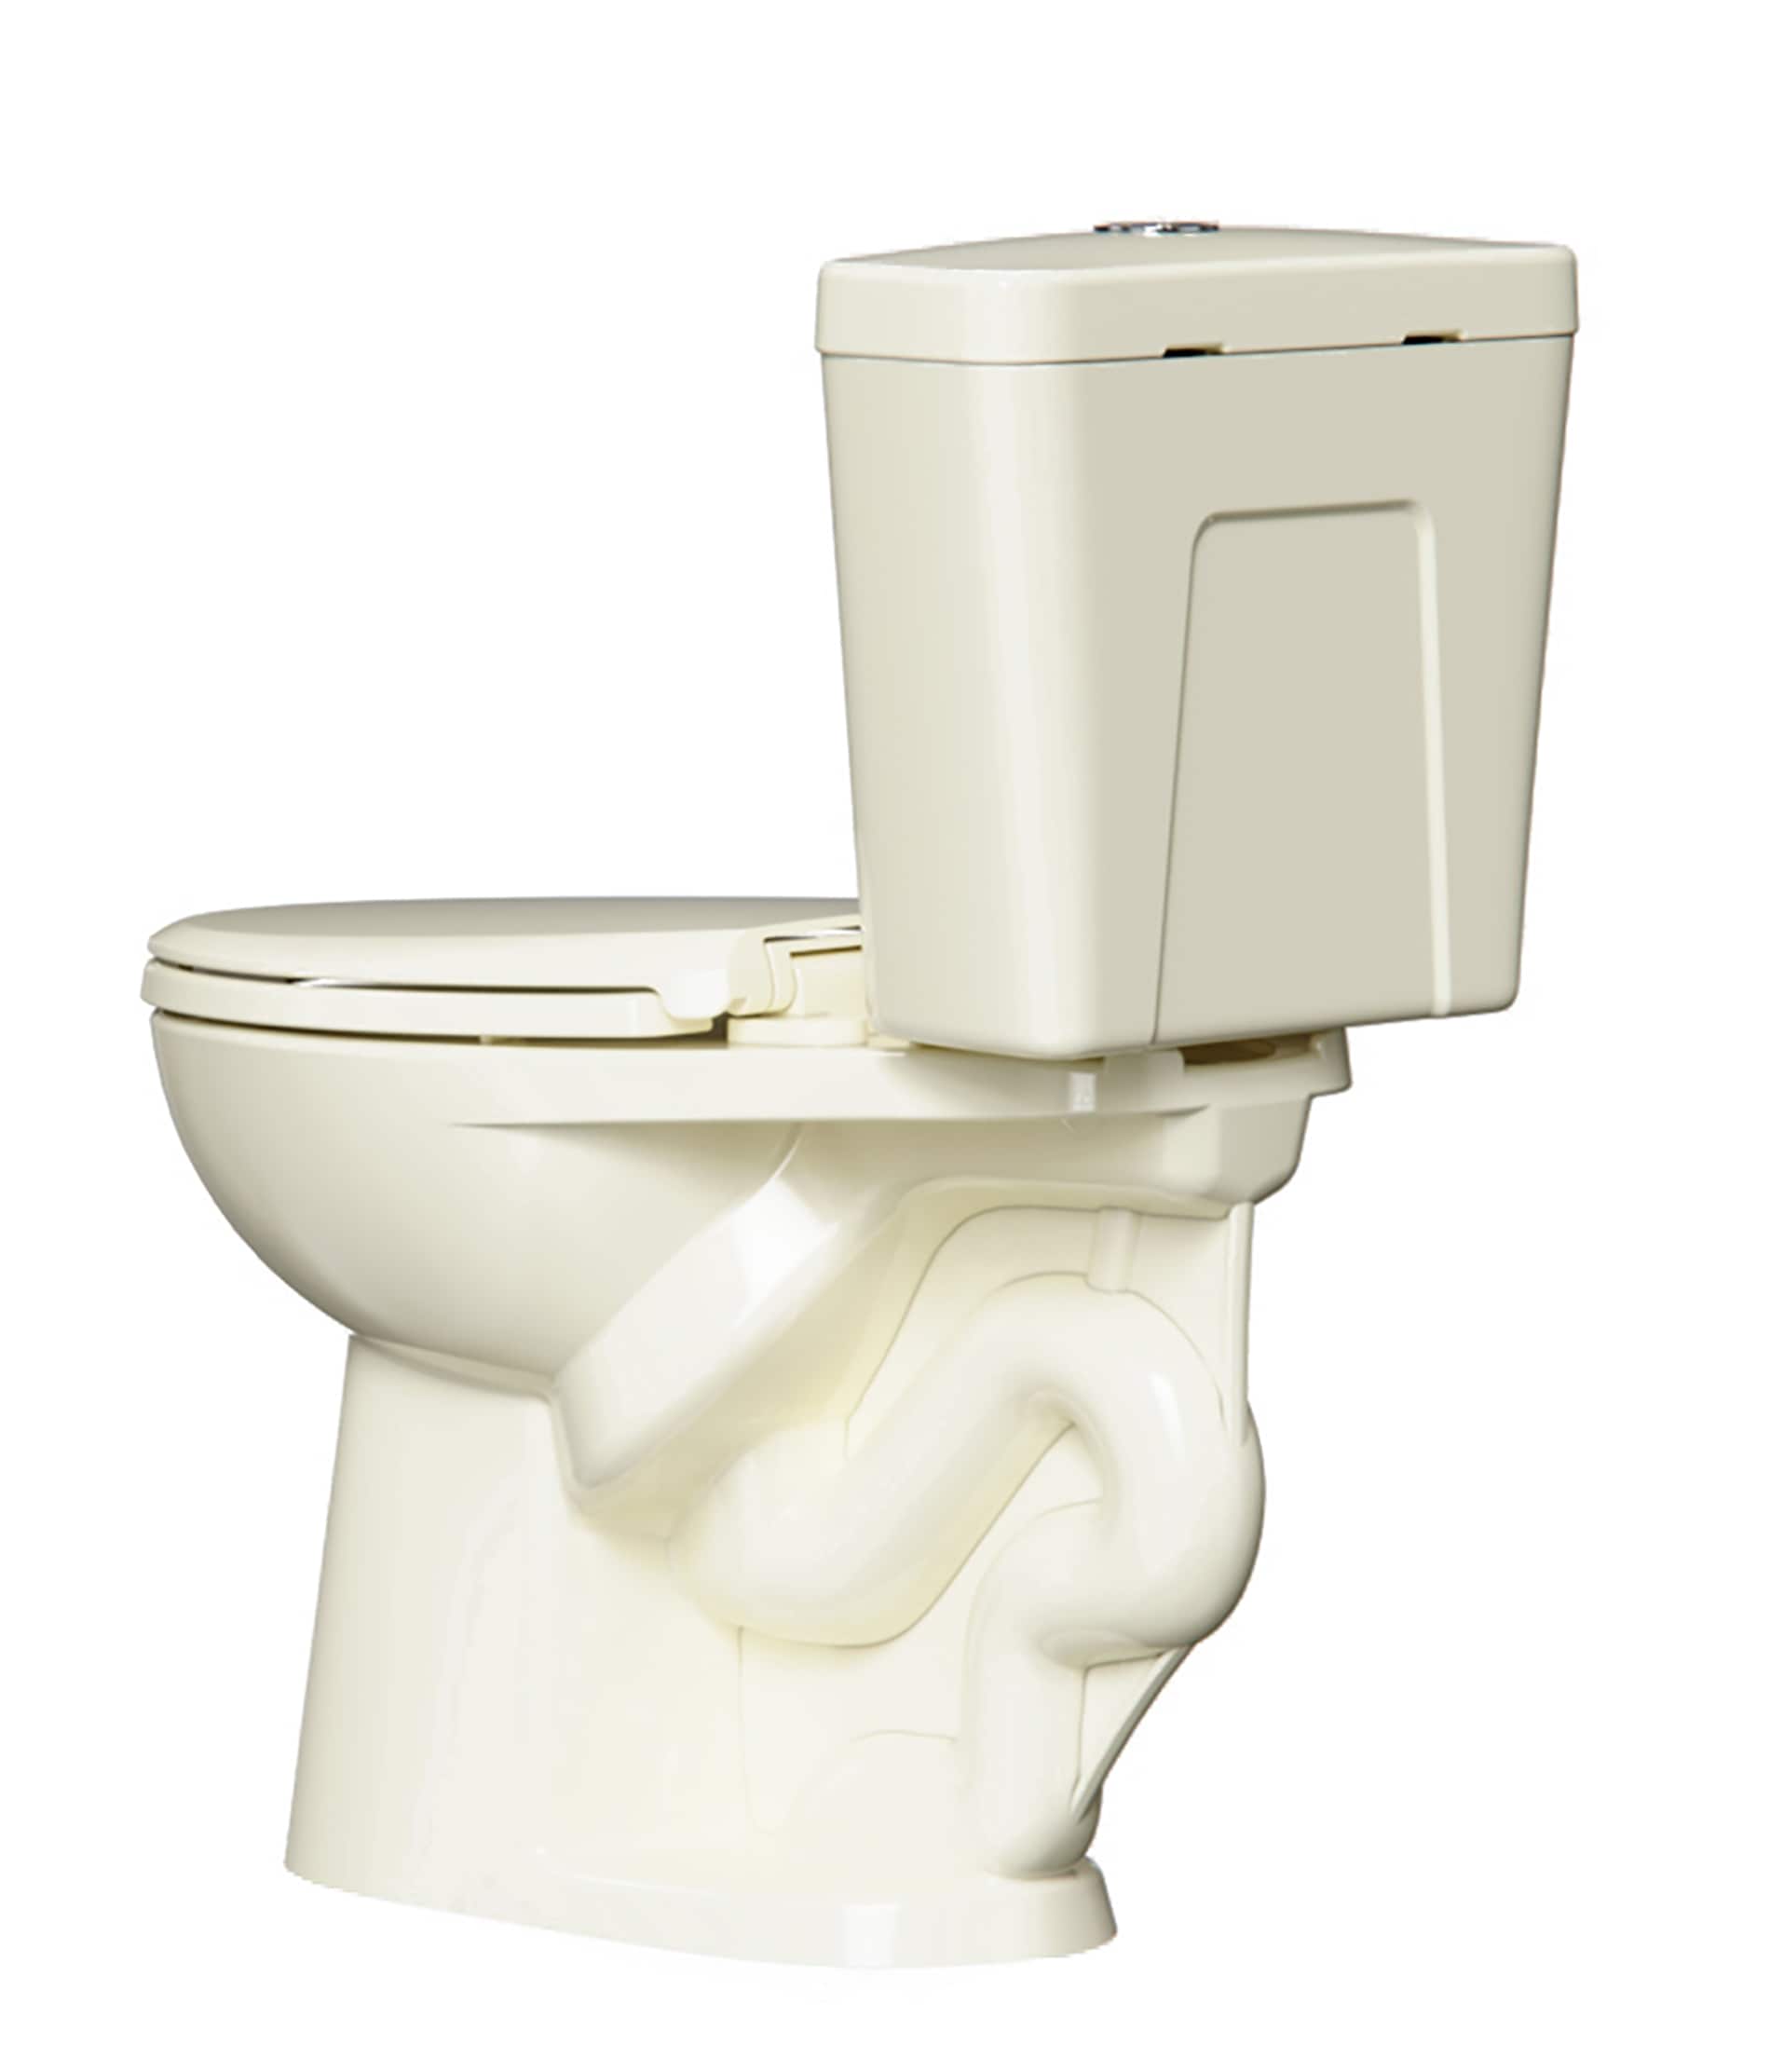 Dual flush toilet - Wikipedia